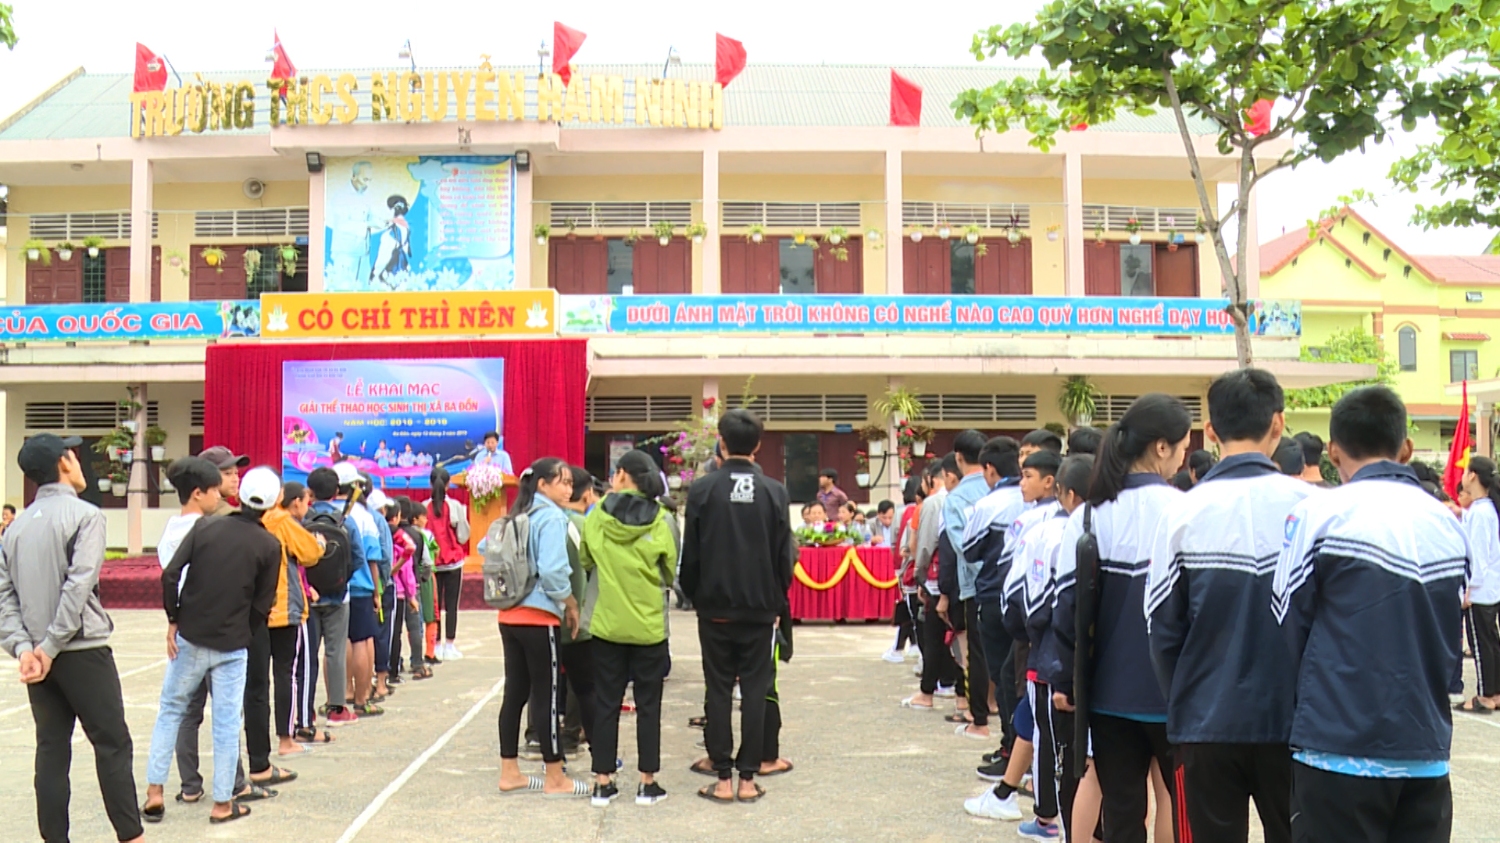 Phòng Giáo dục và Đào tạo thị xã Ba Đồn tổ chức thành công Giải thể thao học sinh năm học 2018-2019.